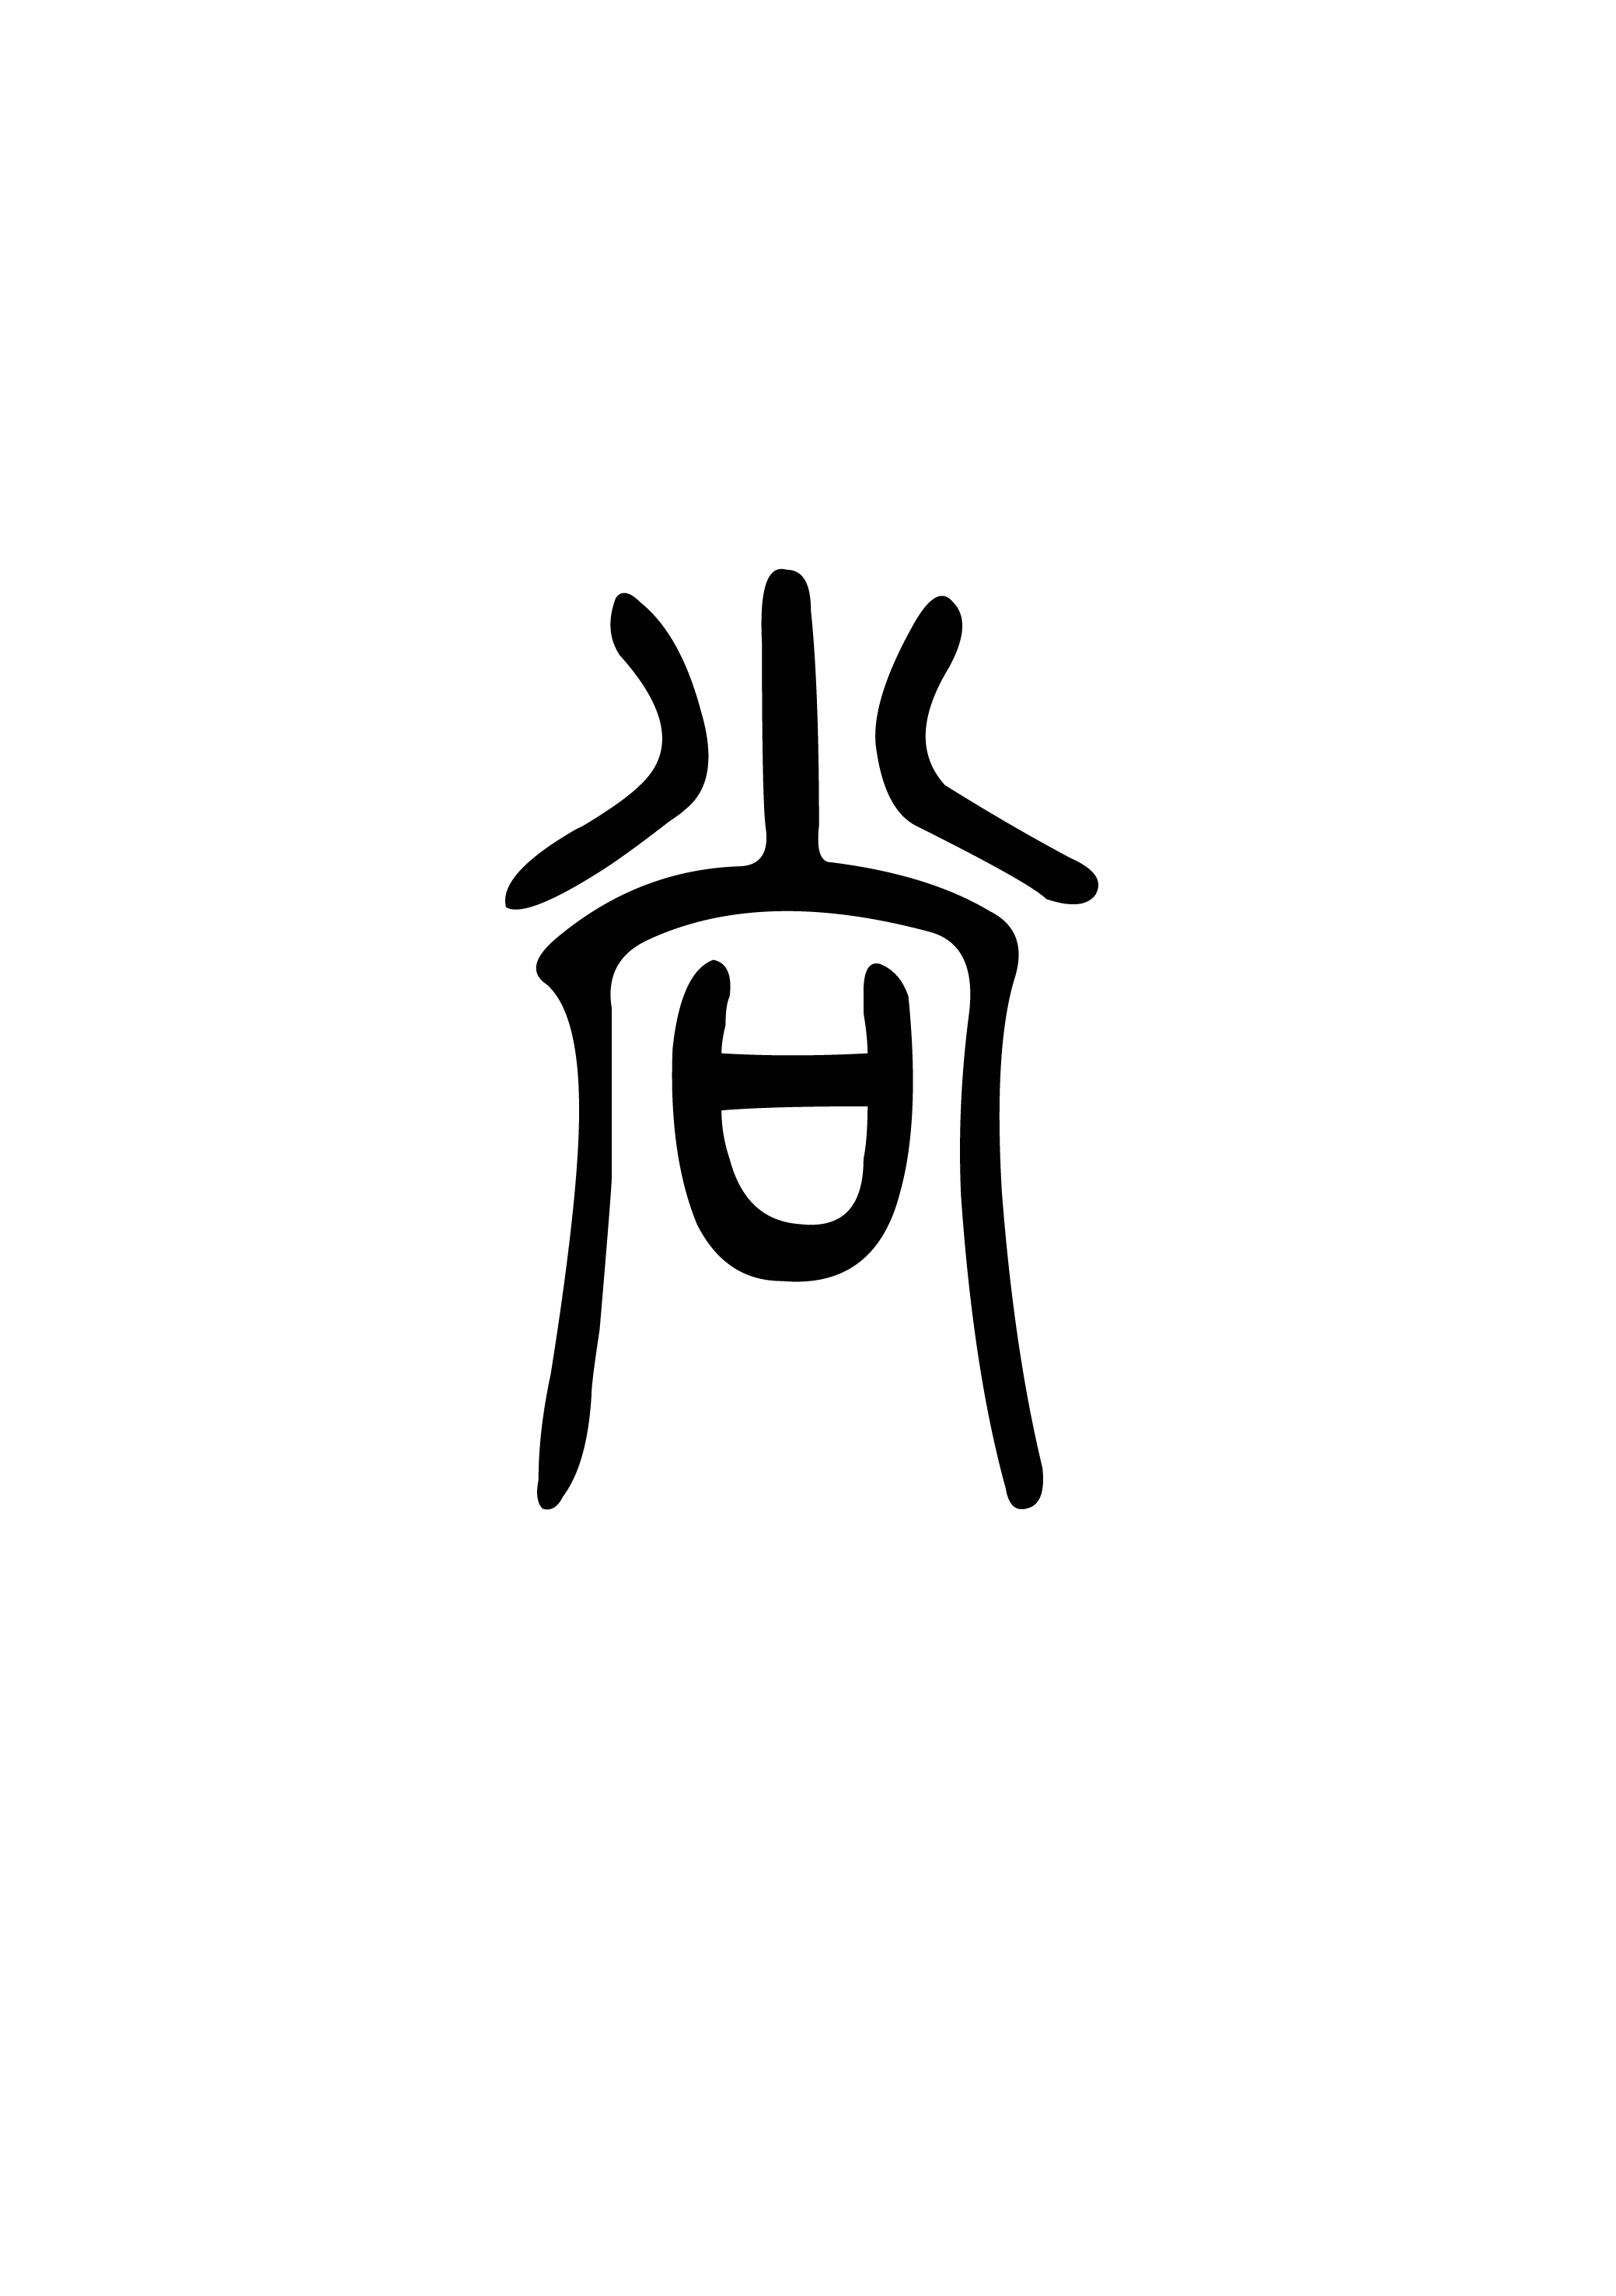 尚(漢語漢字)